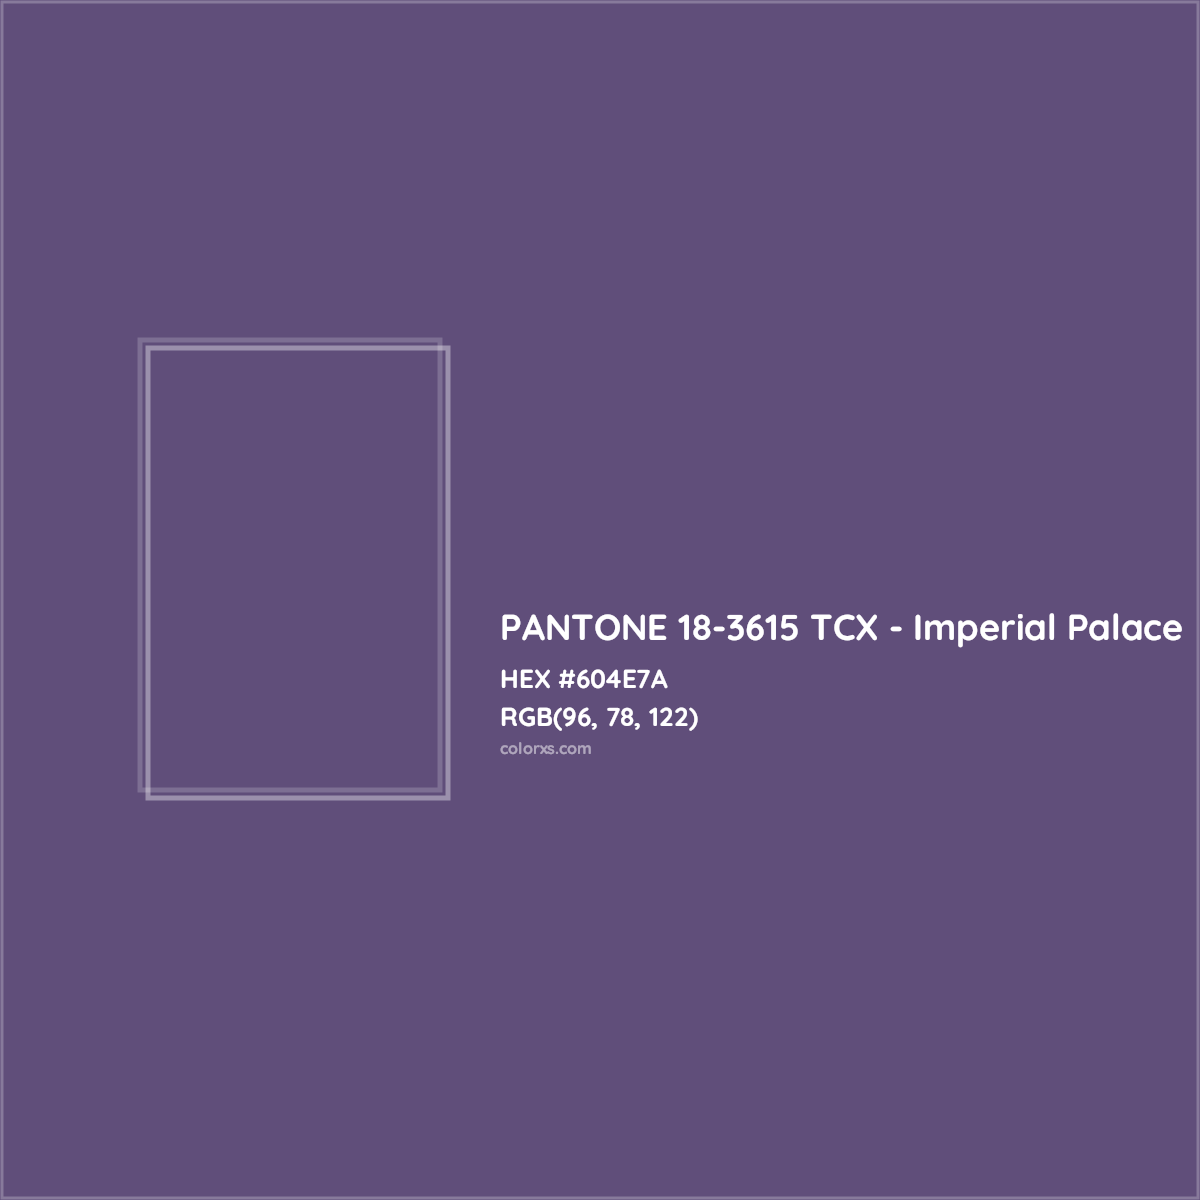 HEX #604E7A PANTONE 18-3615 TCX - Imperial Palace CMS Pantone TCX - Color Code